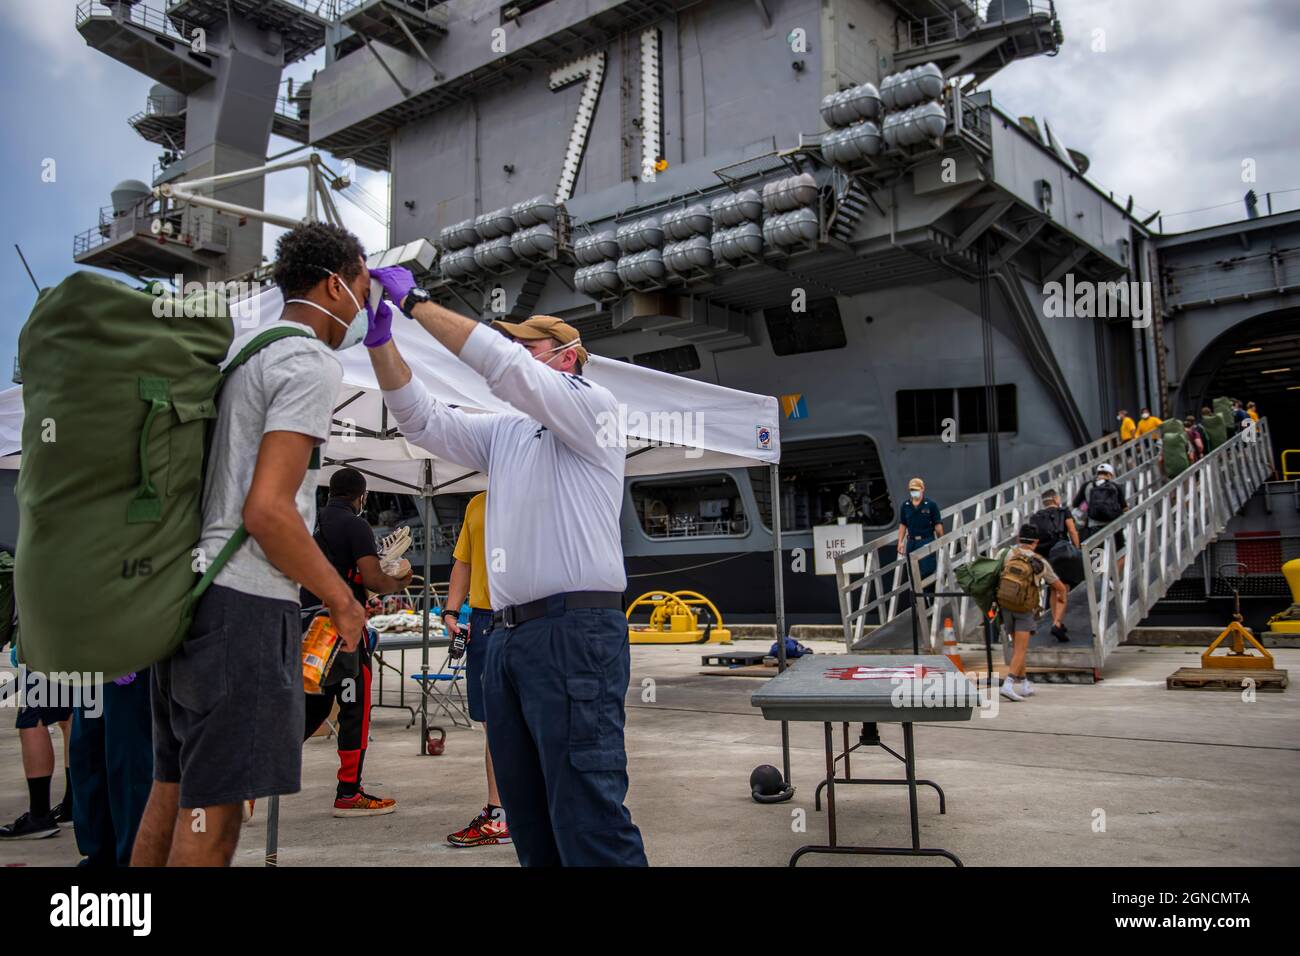 APRA HARBOUR, Guam (1 maggio 2020) i marinai assegnati alla portaerei USS Theodore Roosevelt (CVN 71), che hanno provato negativo due volte per COVID-19, sono asintomatici e hanno completato la loro quarantena off-ship o isolamento, si preparano a salire a bordo della nave pulita. Migliaia di marinai di Theodore Roosevelt sono stati spostati negli hotel locali nel tentativo di implementare una strategia di mitigazione aggressiva per ridurre al minimo la diffusione di COVID-19 e proteggere la salute dei marinai. (STATI UNITI Foto Navy di Mass Communication Specialist 1a Classe Nathan Carpenter/Released)200501-N-CO914-1022 Foto Stock